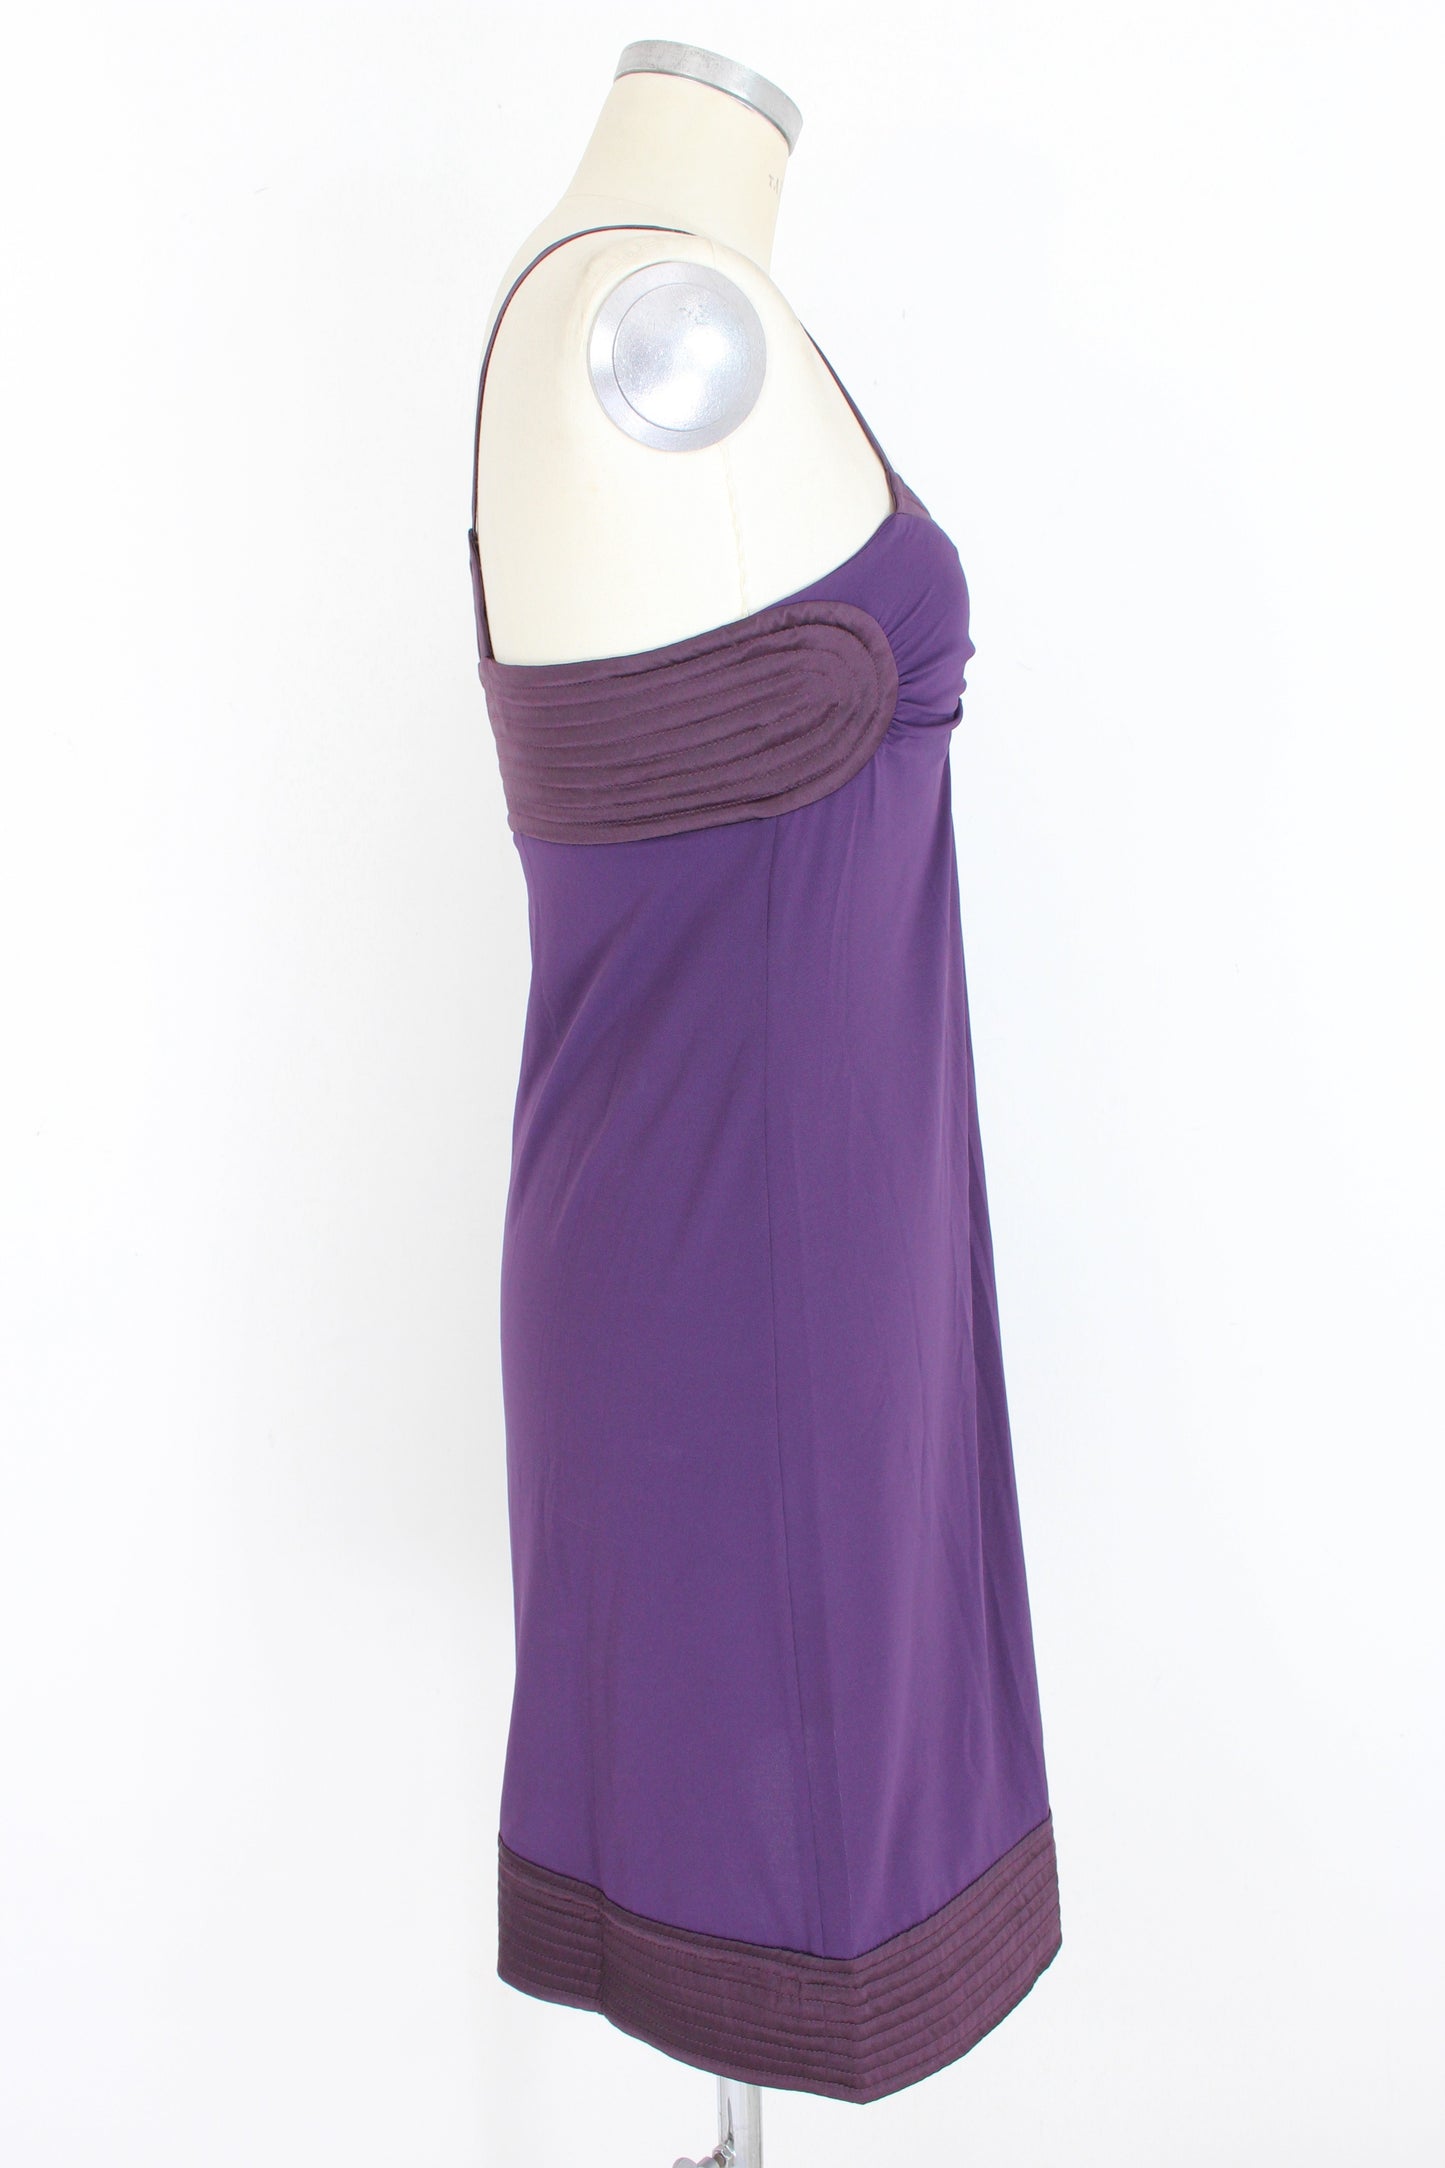 Alberta Ferretti Purple Silk Evening Sheath Dress